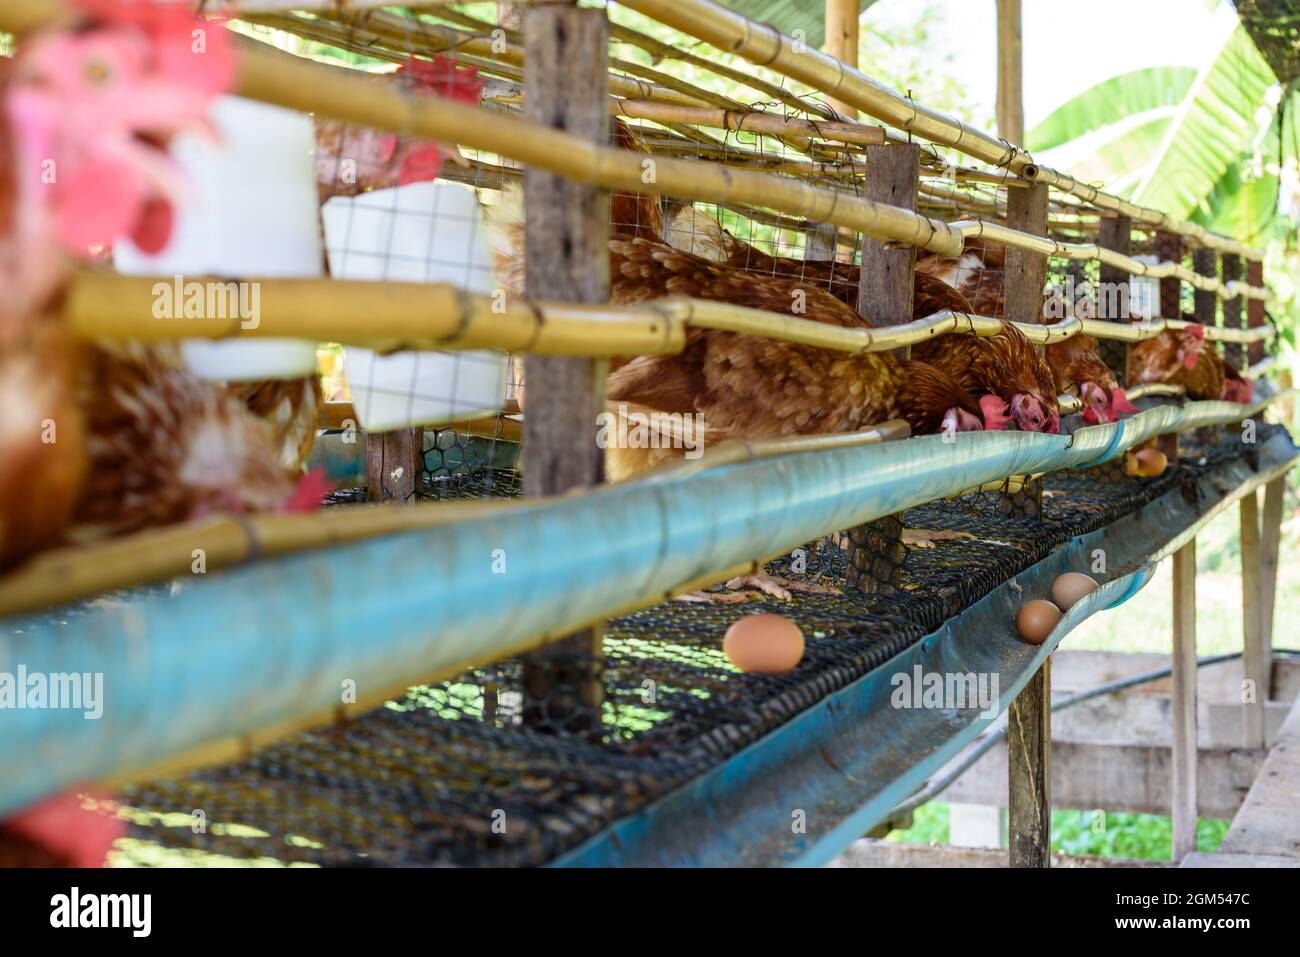 Les poules brunes se nourrissent de nourriture animale et de production d'oeufs provenant d'élevage de poules pondeuses, simple élevage de poulet faible coût dans la campagne, agriculture élevage po Banque D'Images